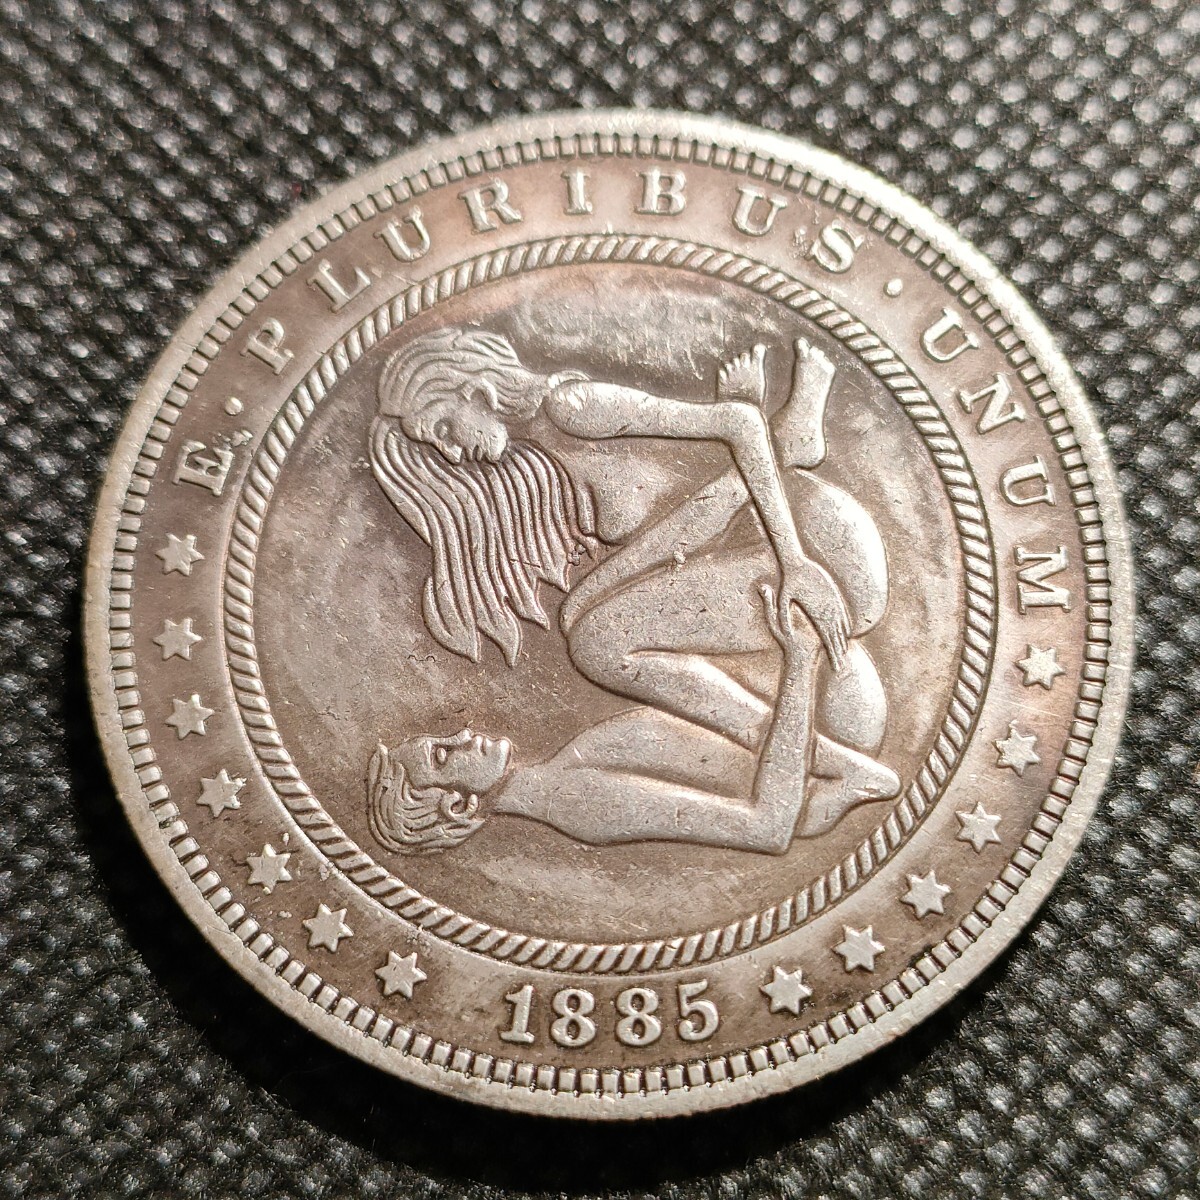 7107 アメリカ古銭 ルンペン 約38mm イーグル チャレンジコイン ゴルフマーカー コイン アンティーク ホーボーの画像1